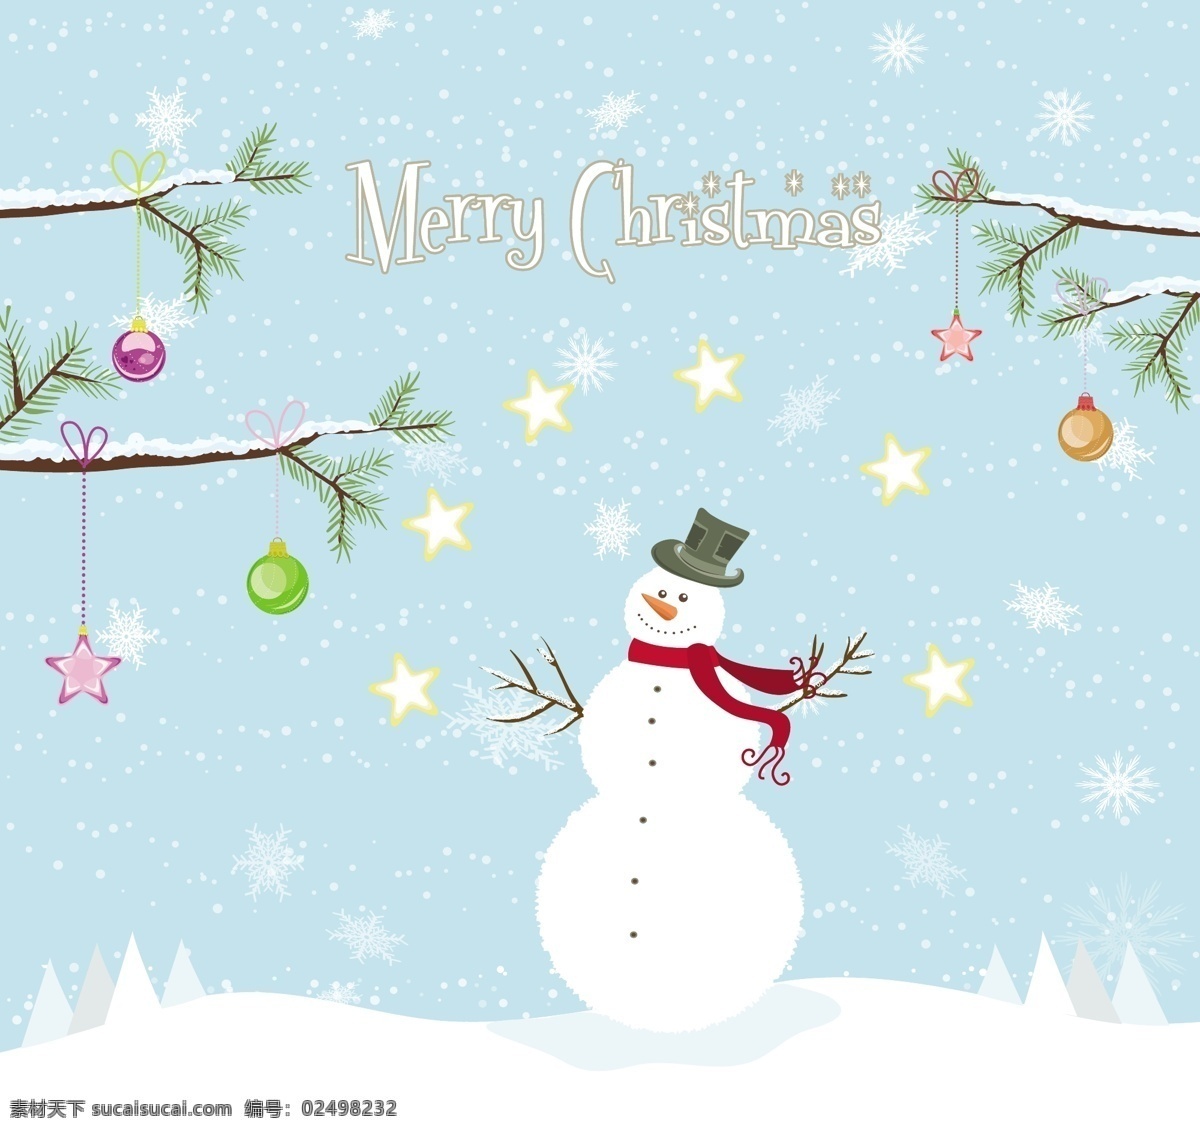 卡通 圣诞节 雪人 挂件 树枝 星星 圣诞节背景 圣诞节素材 底纹 背景 矢量背景 卡通形象 矢量人物 矢量素材 白色